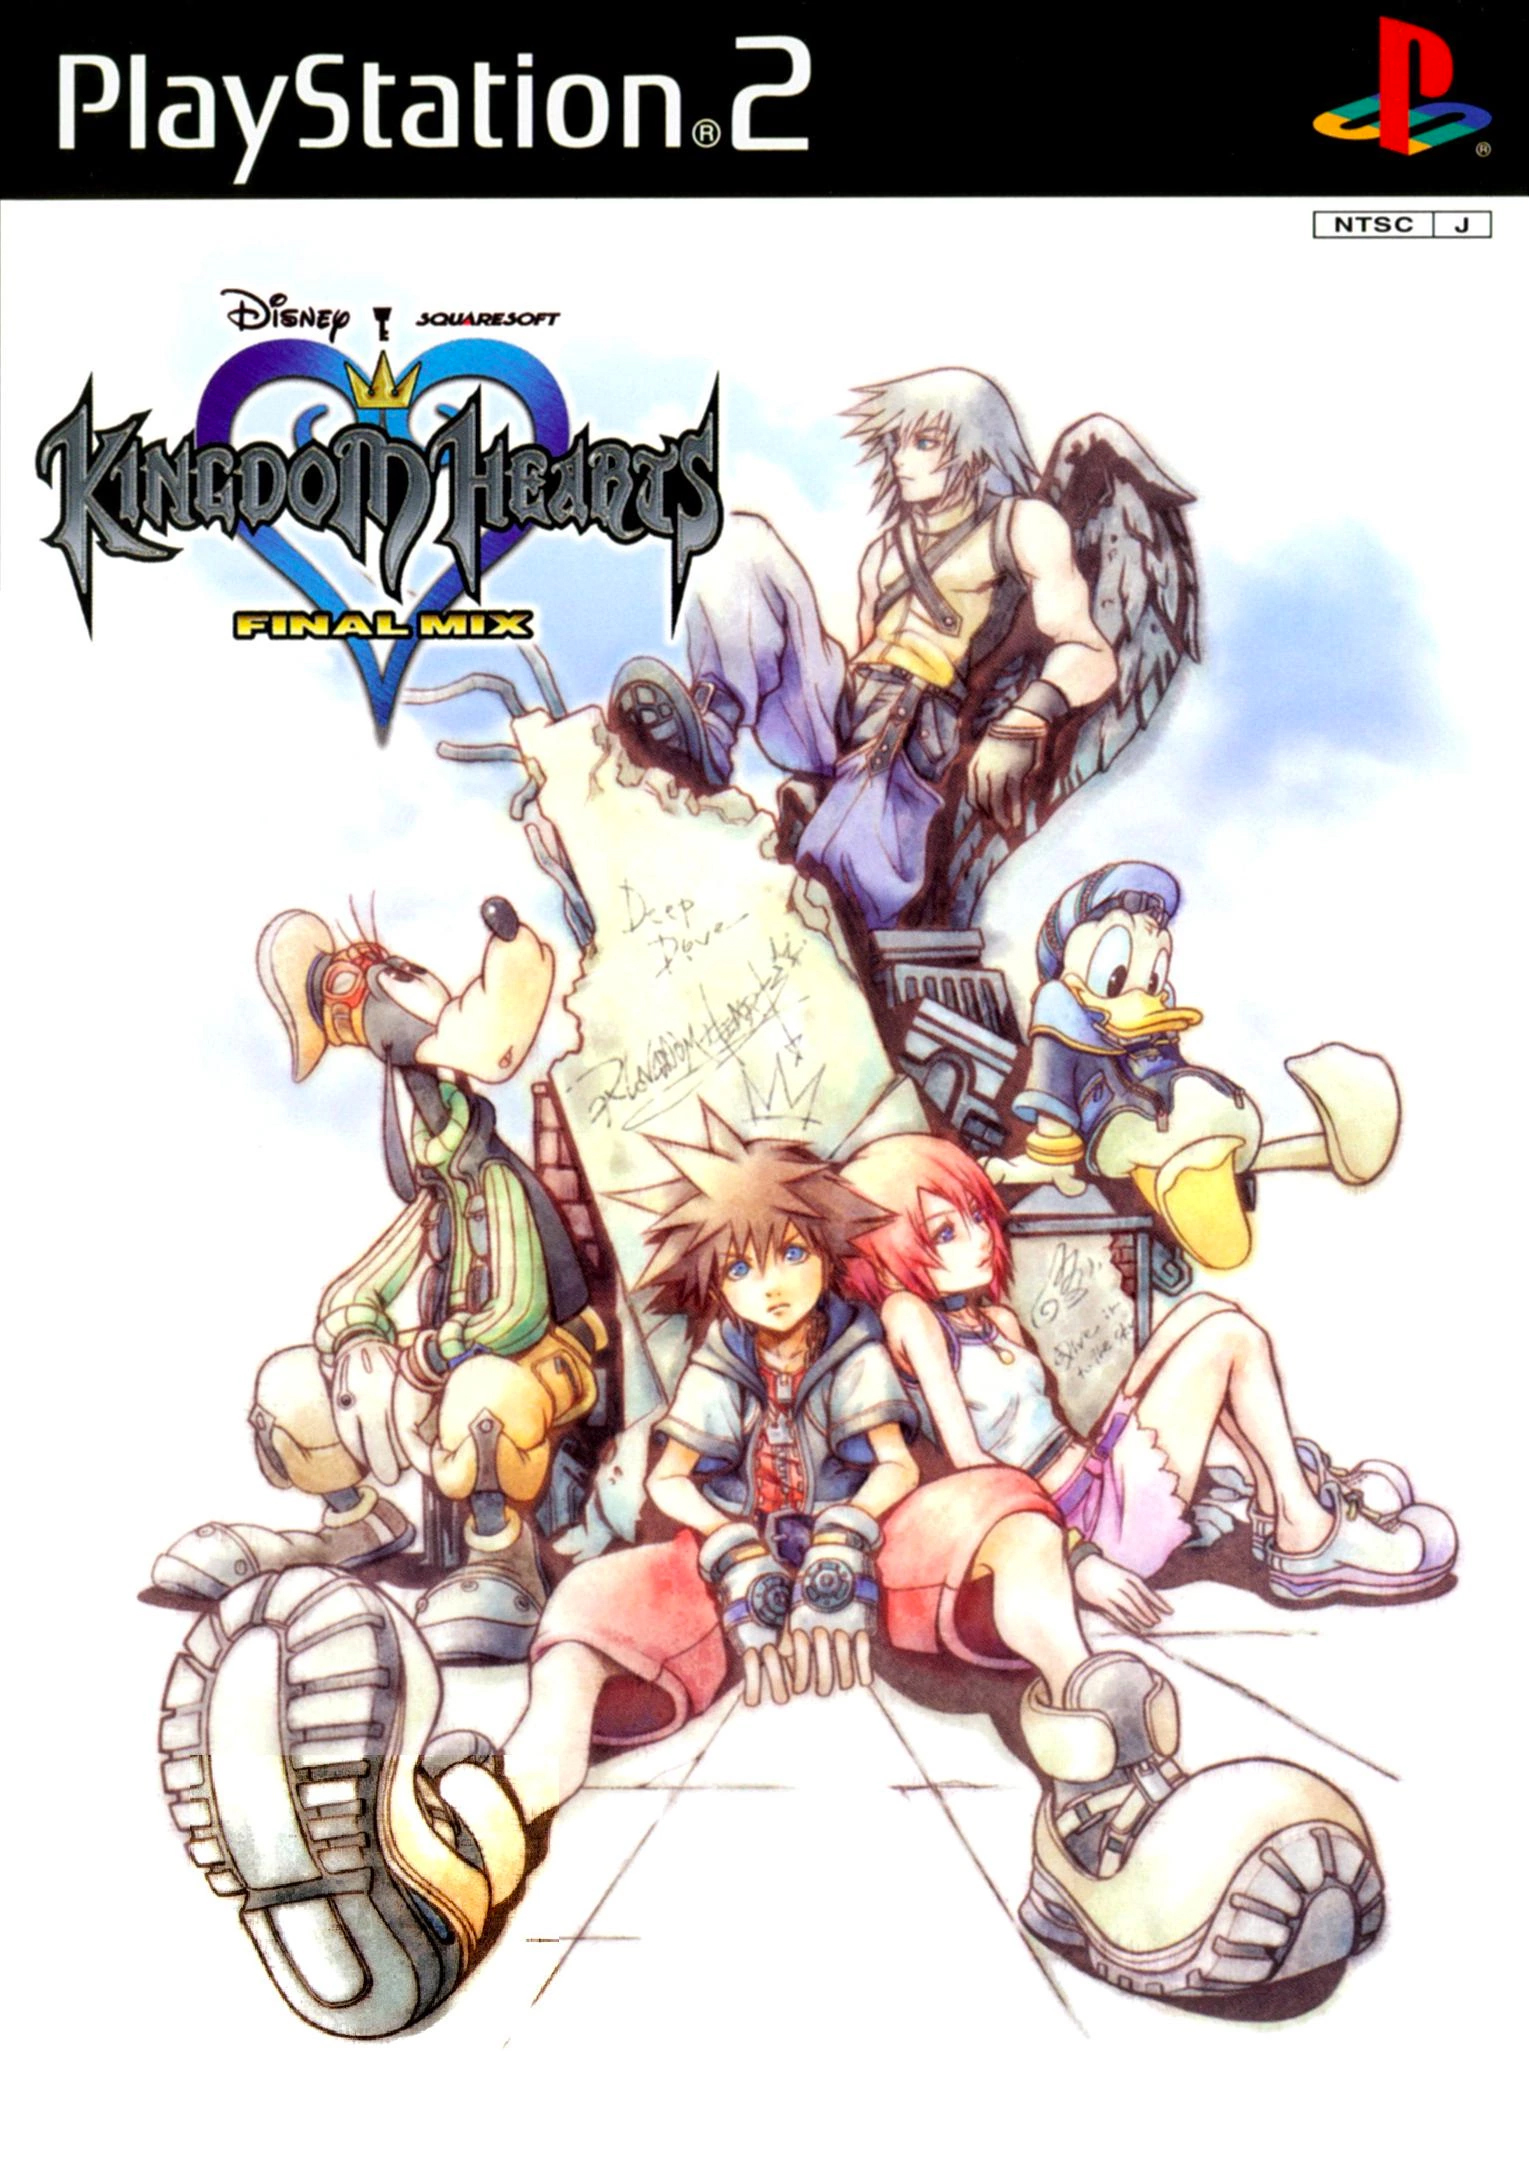 キングダム ハーツ Kingdom Hearts Wiki Fandom